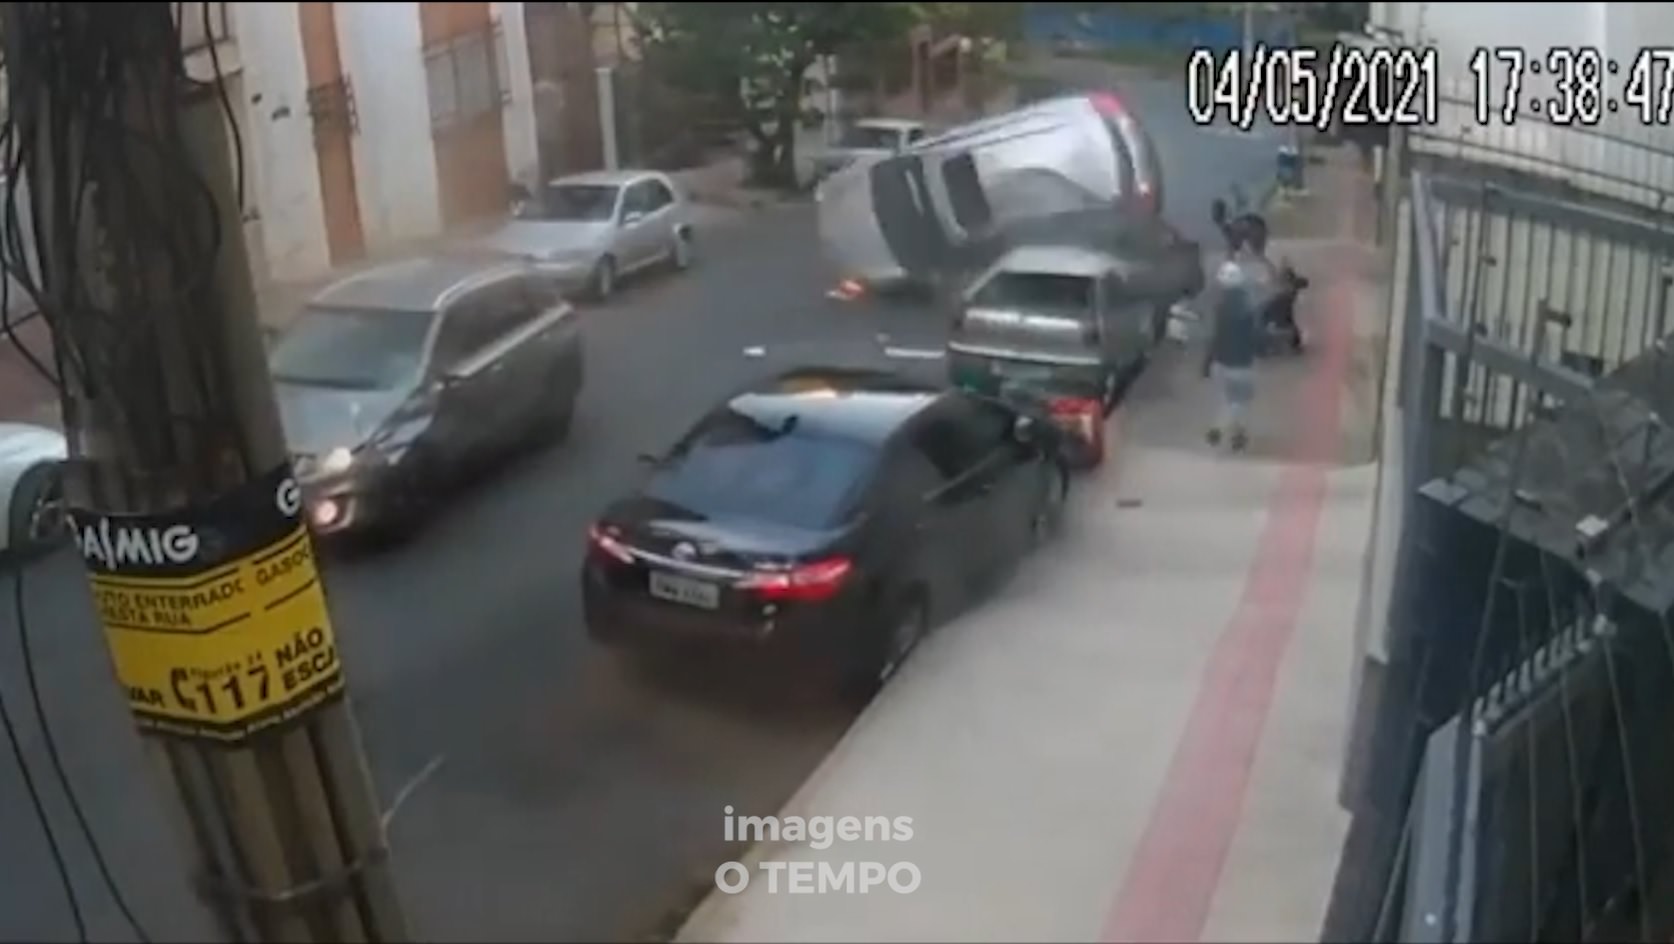 Vídeo: carro capota em rua cheia de pedestres em Belo Horizonte